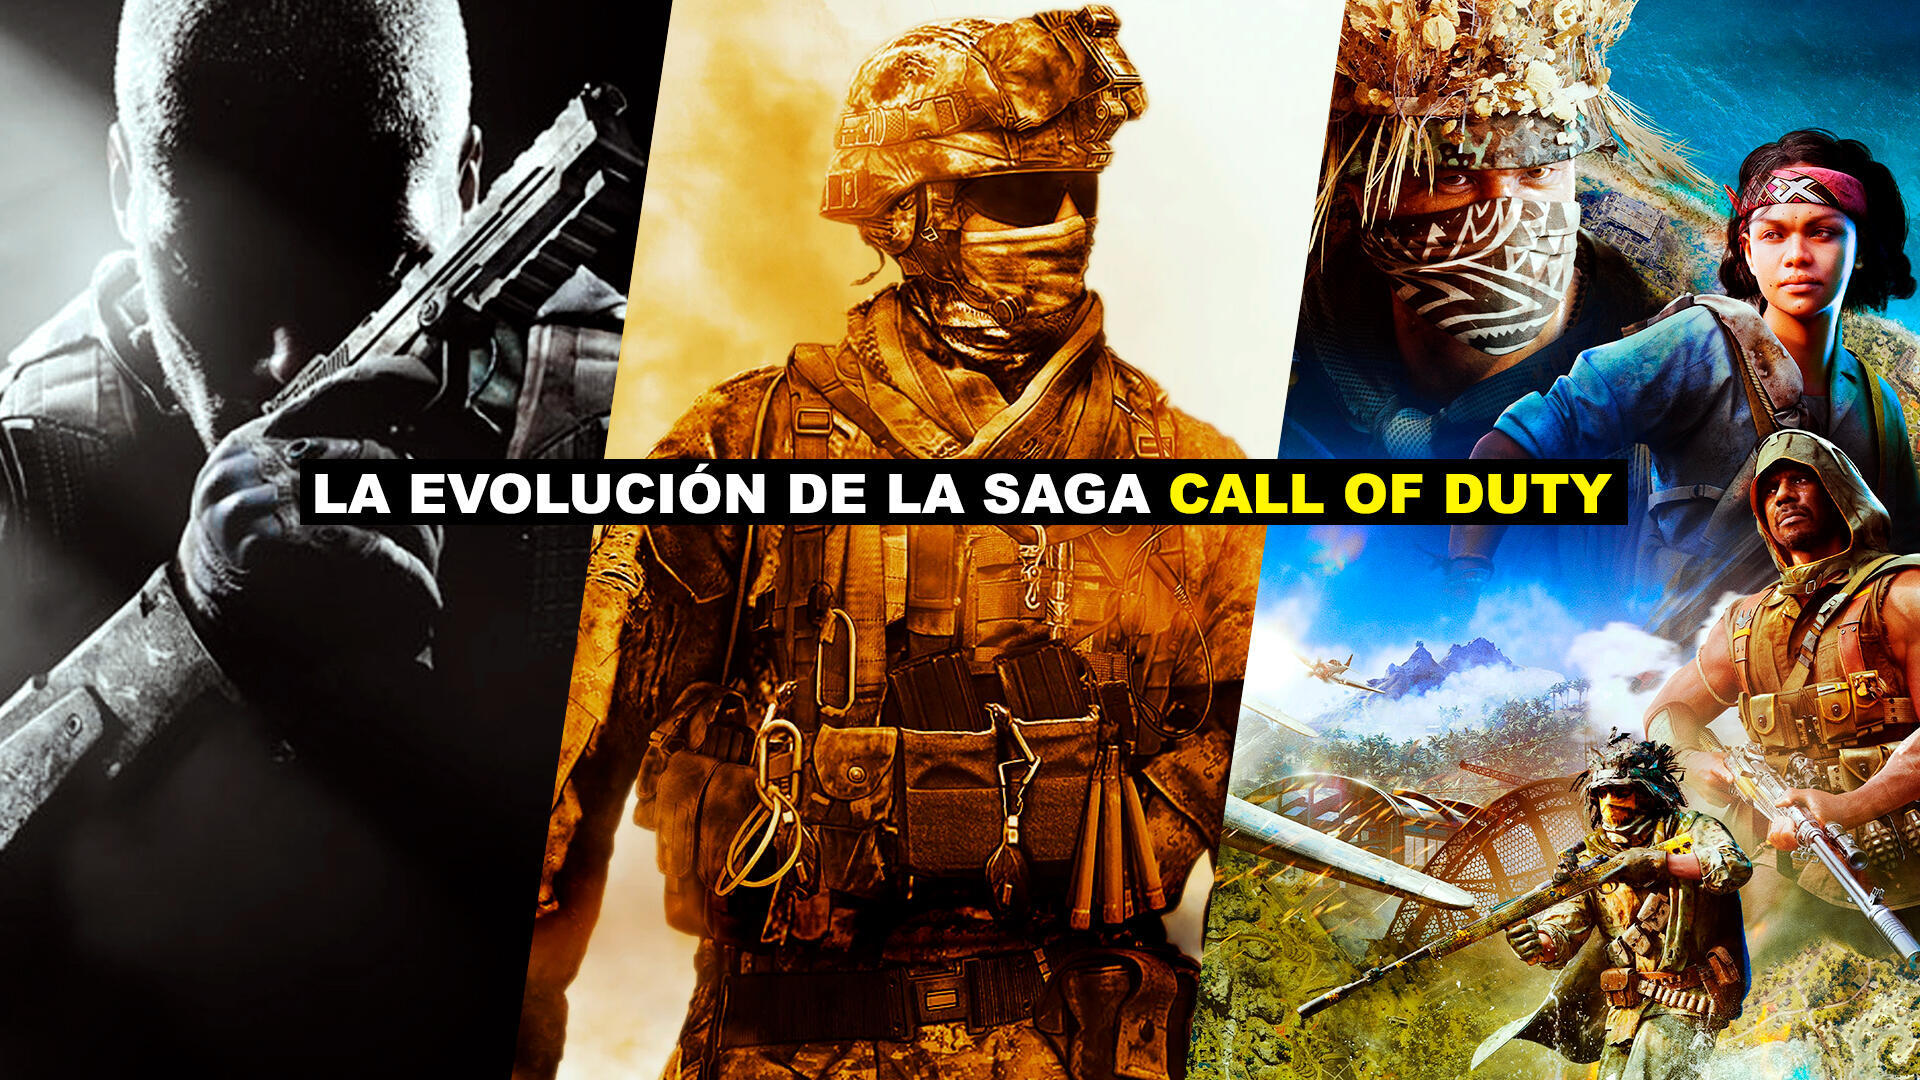 La evolucin de la saga Call of Duty, el shooter multijugador que cambi la industria